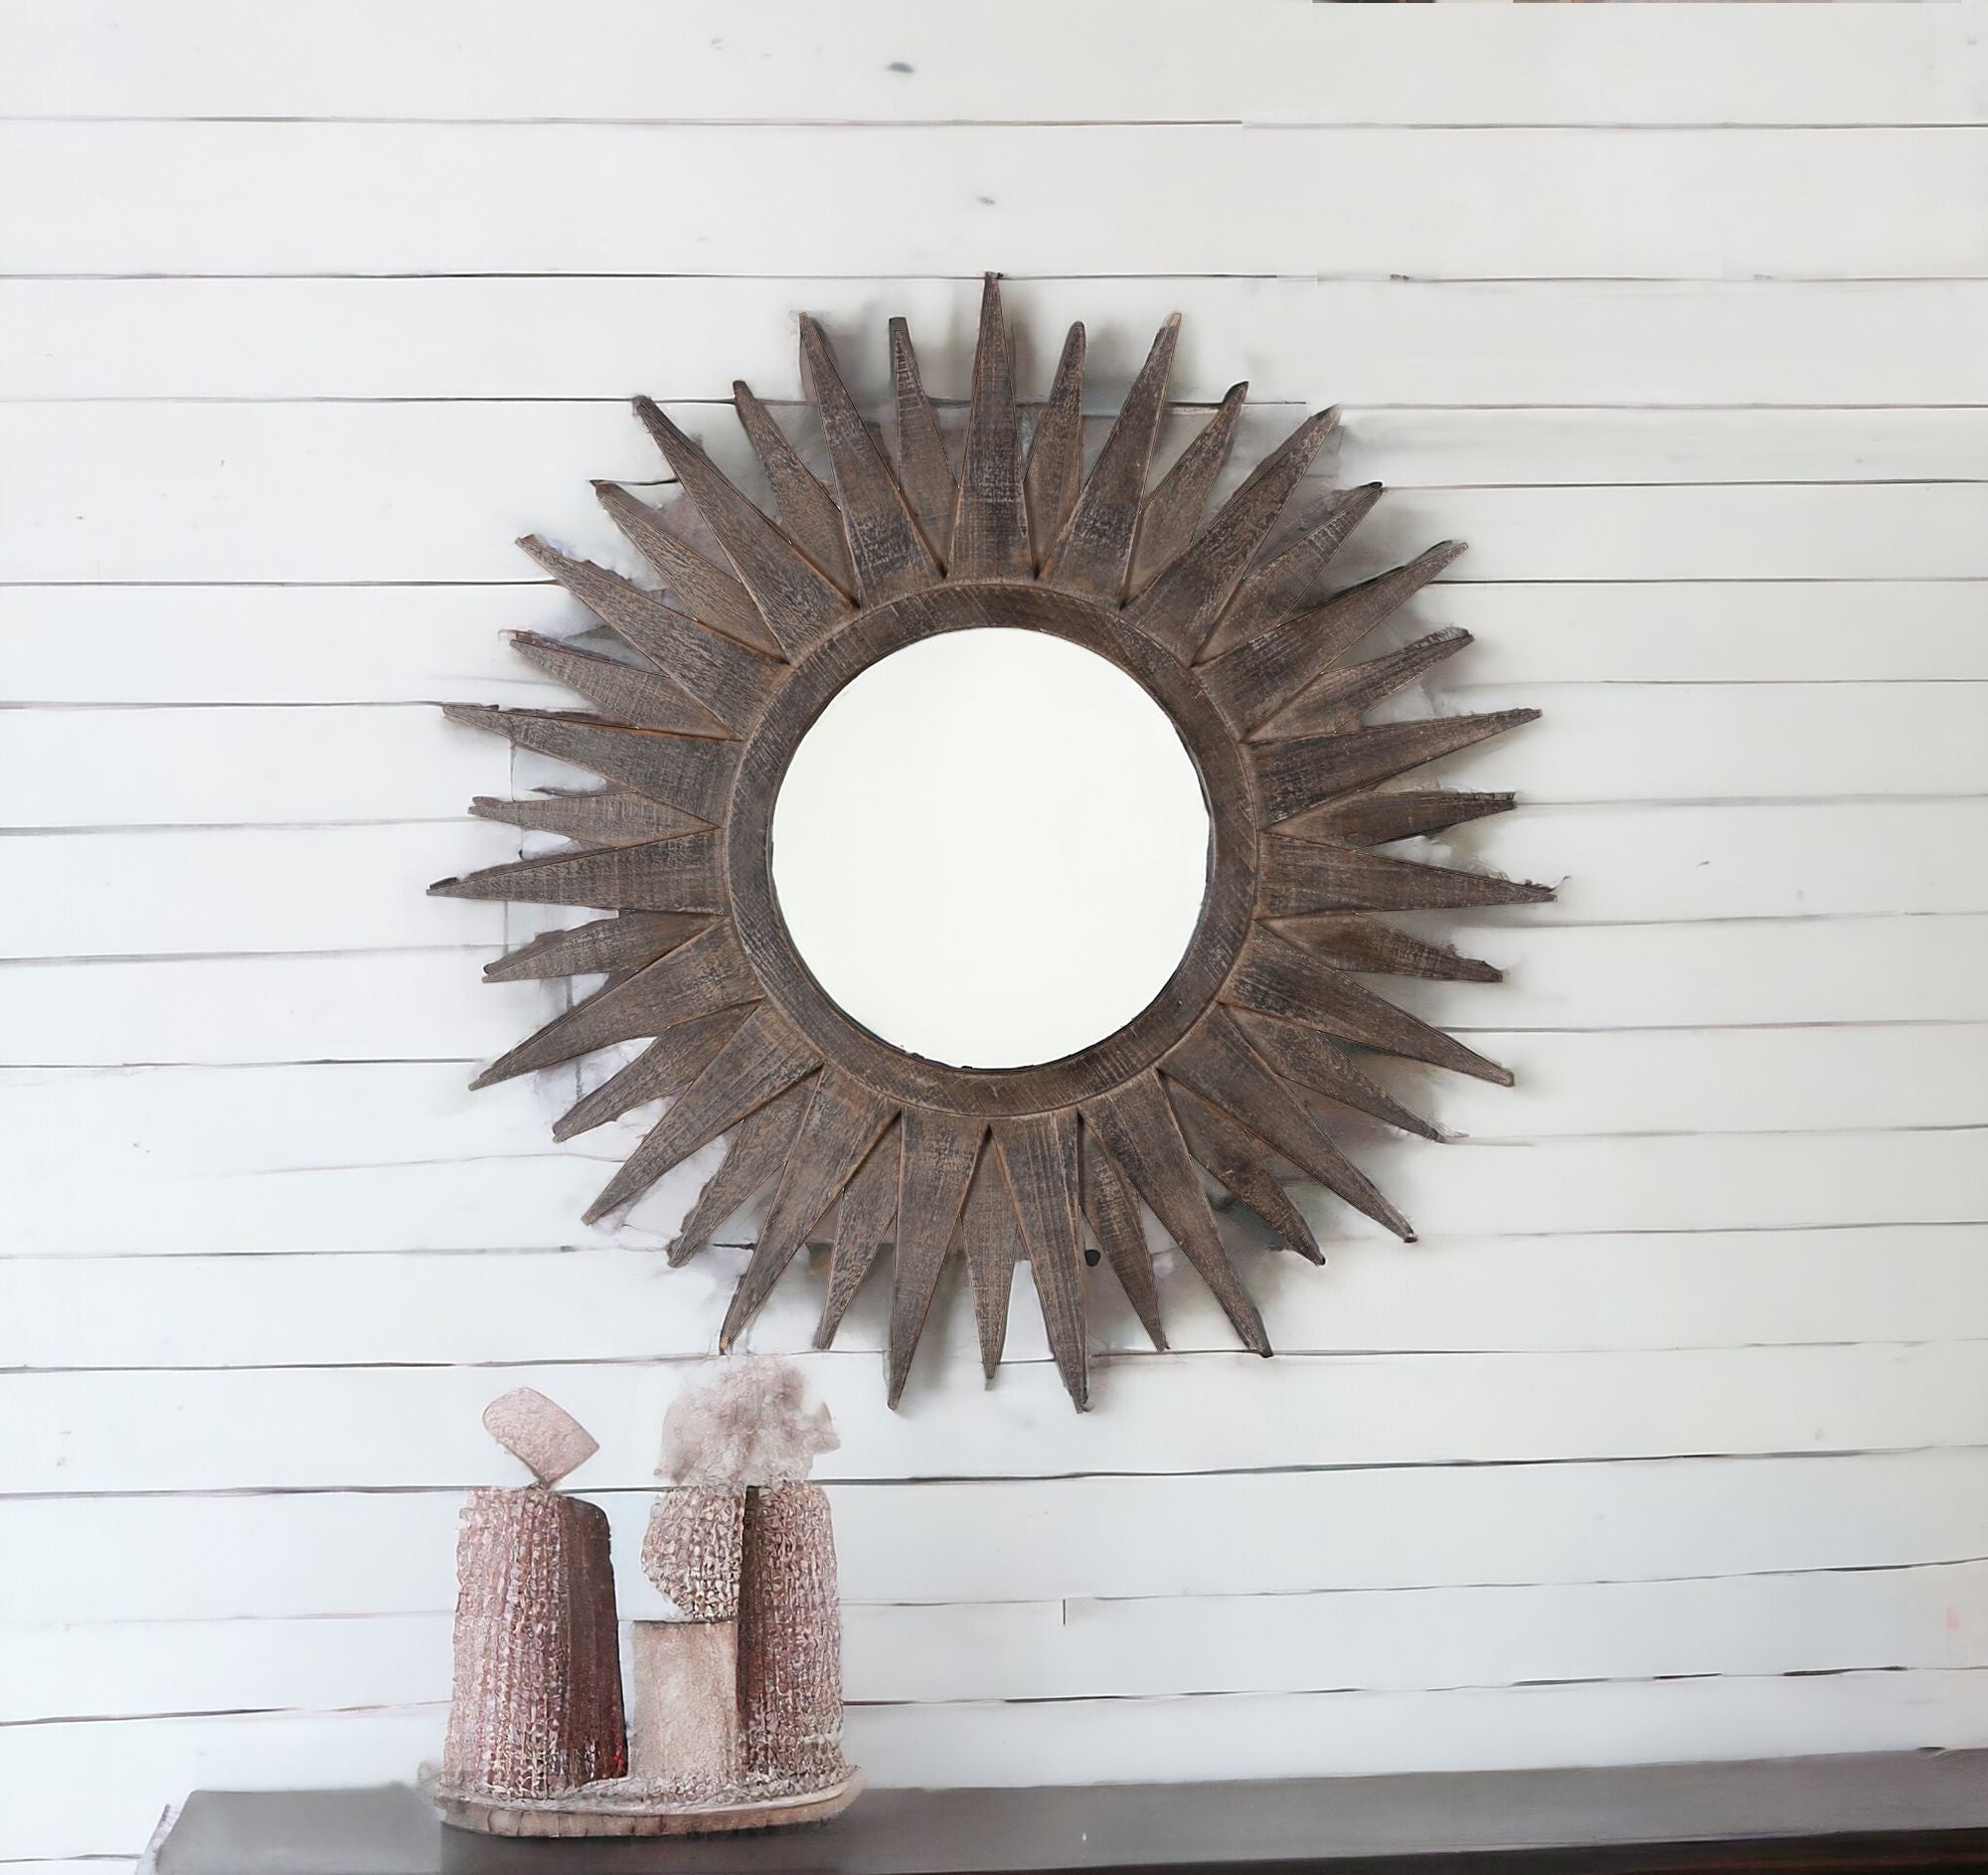 30" Brown Sunburst Wood Framed Accent Mirror